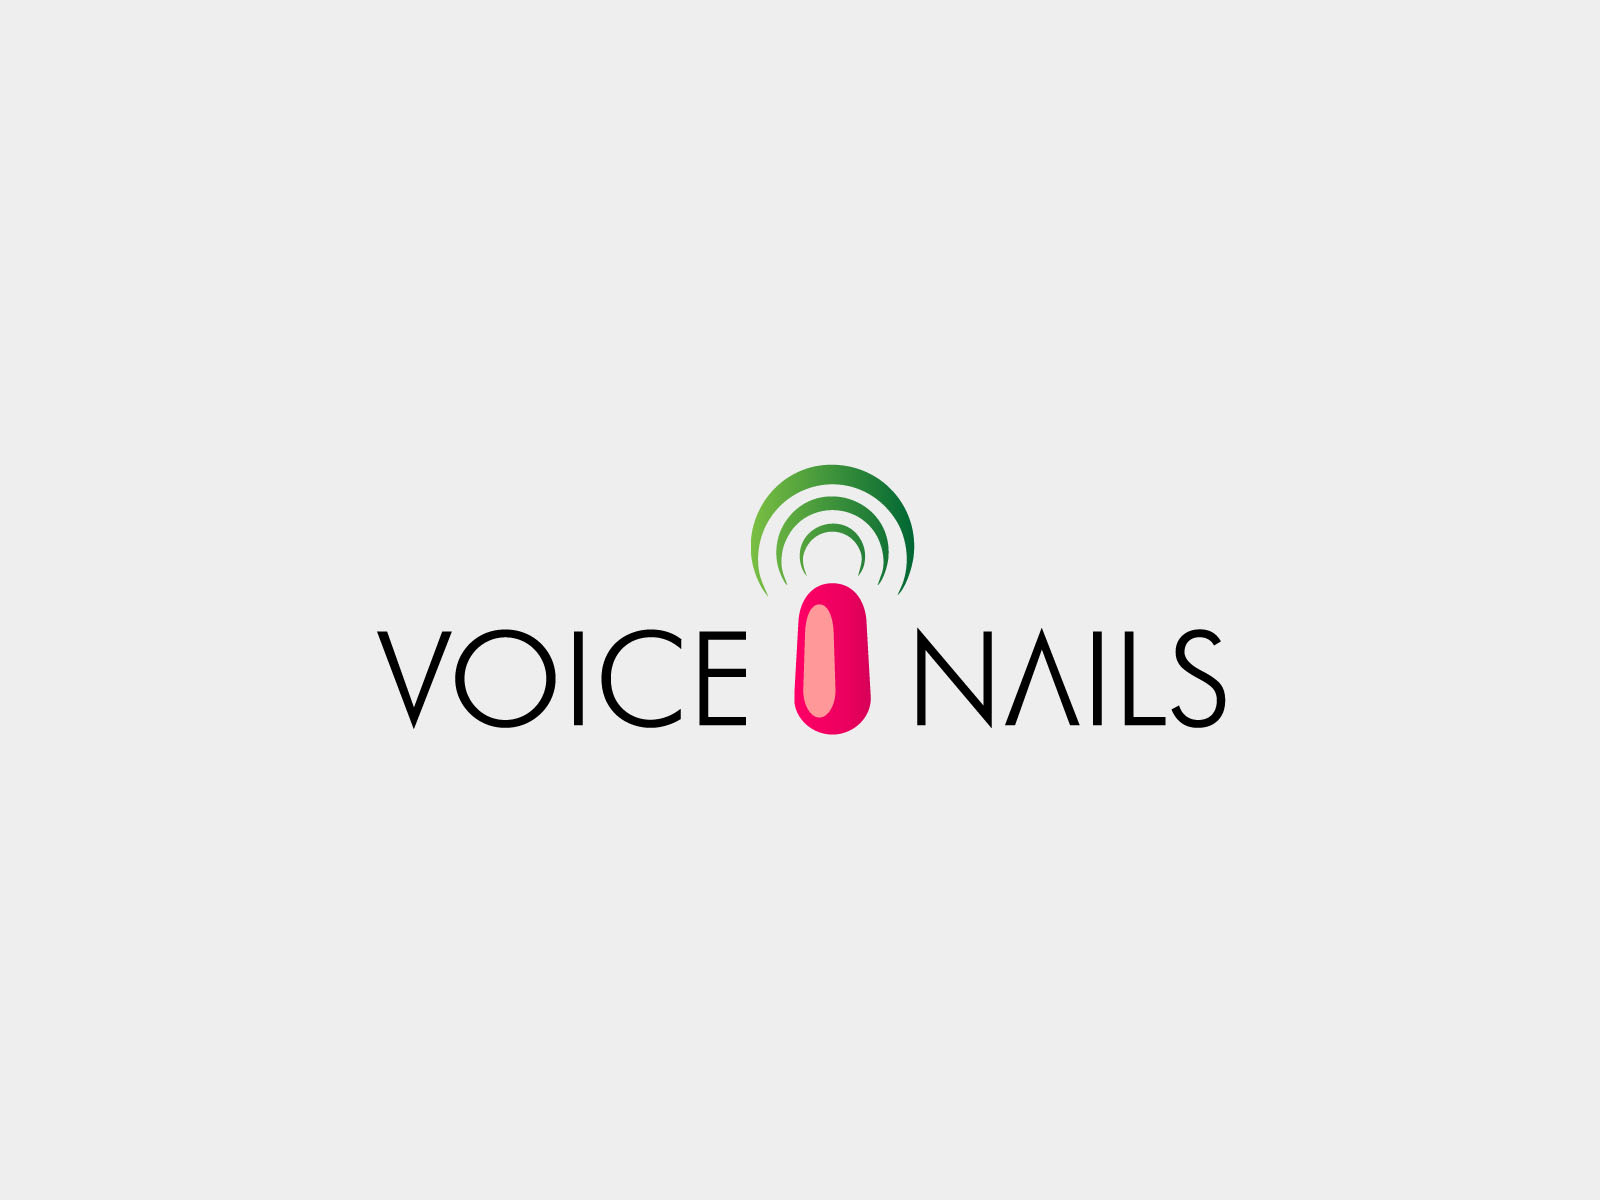 Voice Nails